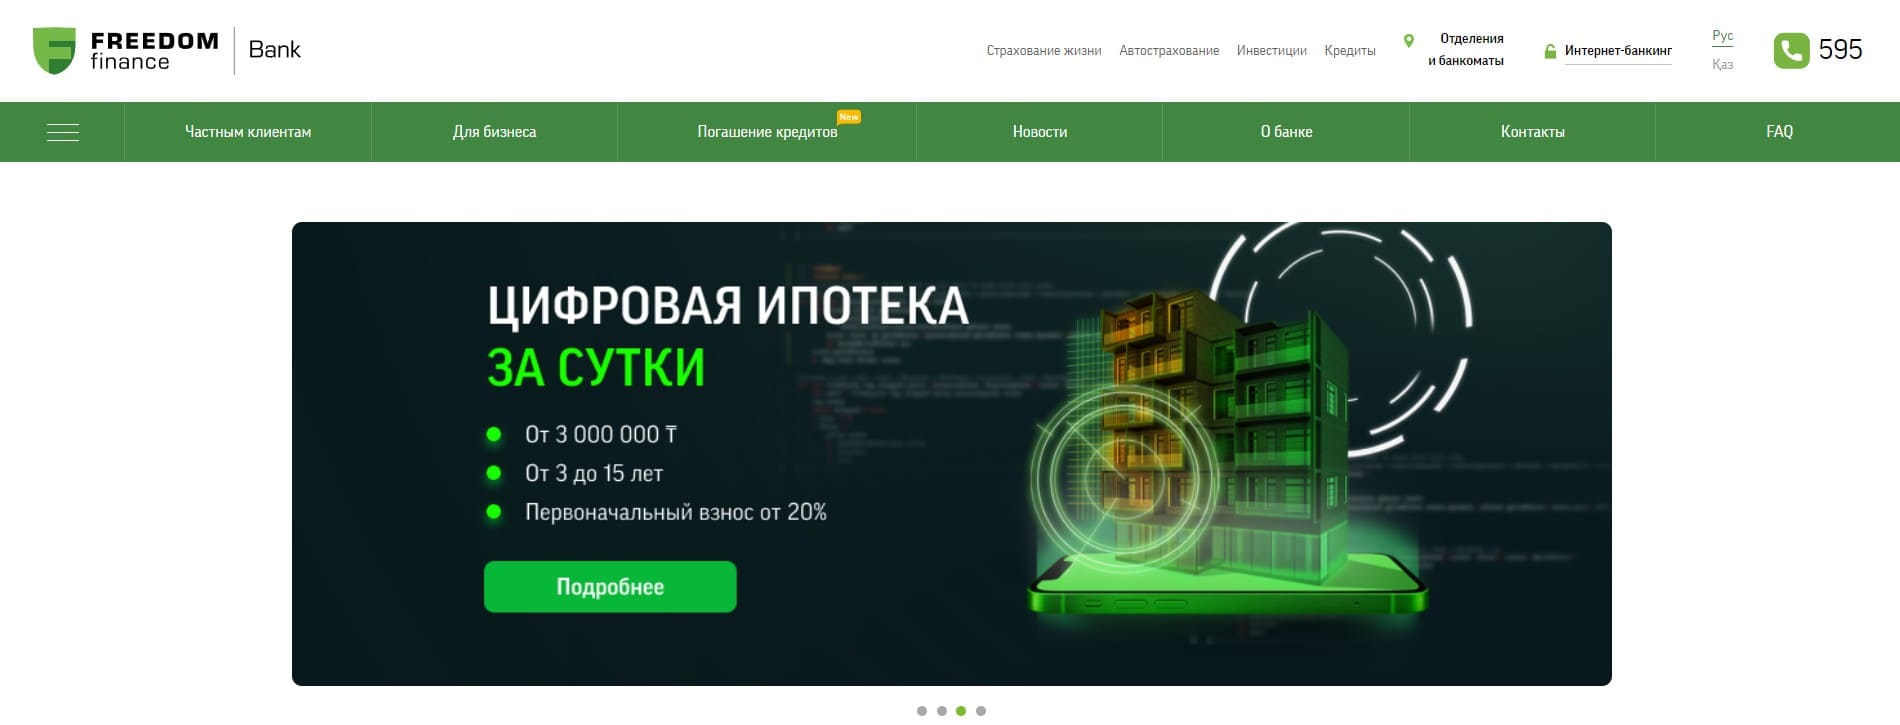 АО "Банк Фридом Финанс Казахстан" Kassa Nova